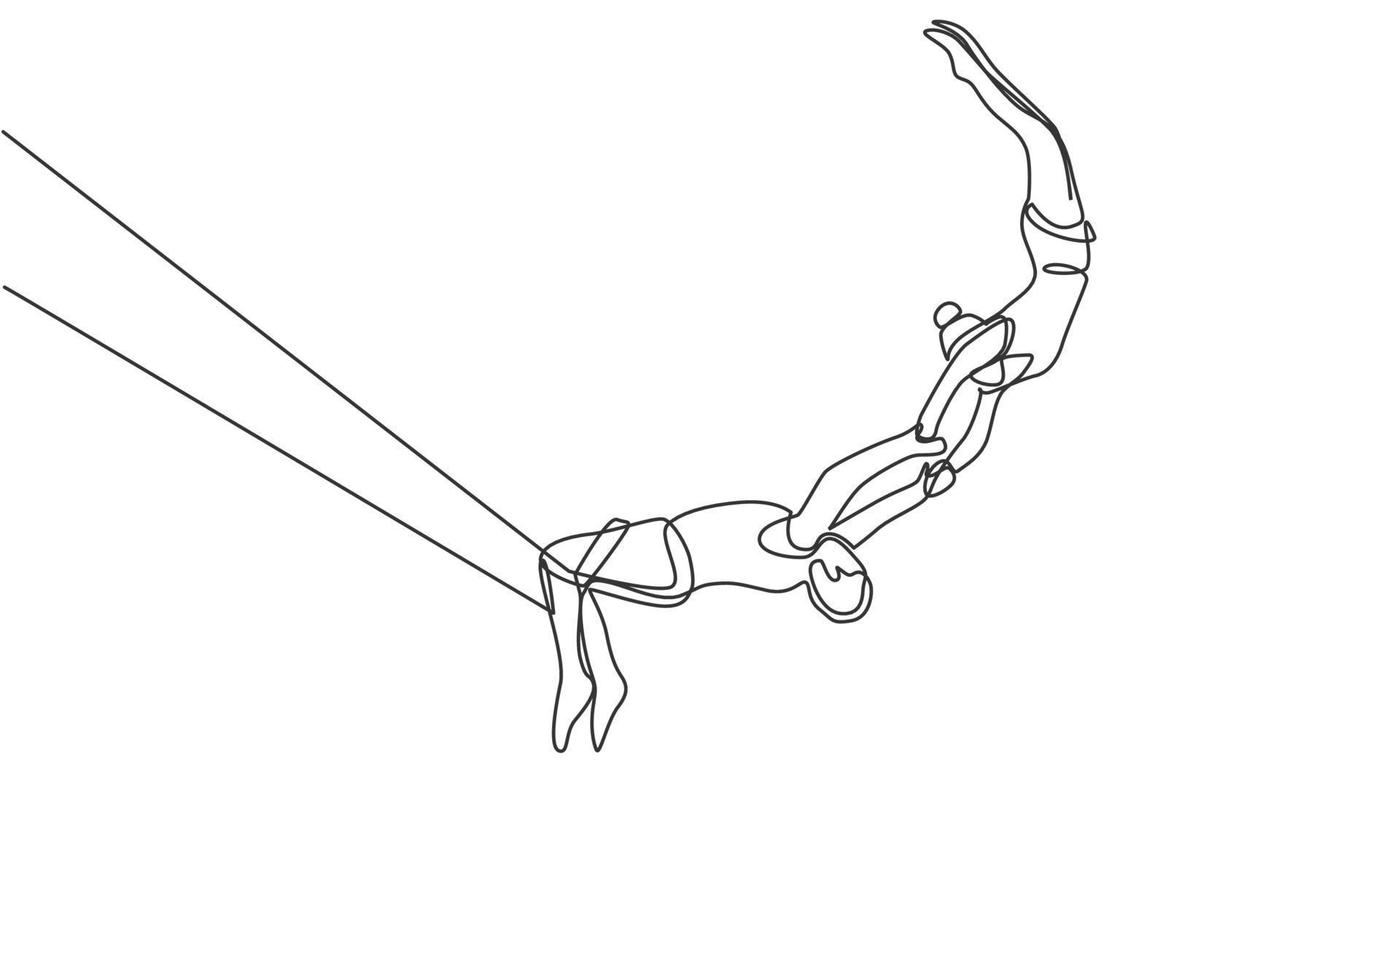 single one line desenhando dois jogadores acrobáticos em ação em um trapézio, com um jogador do sexo masculino pendurado em suas duas pernas enquanto apanha uma jogadora. ilustração em vetor gráfico de desenho de uma linha.